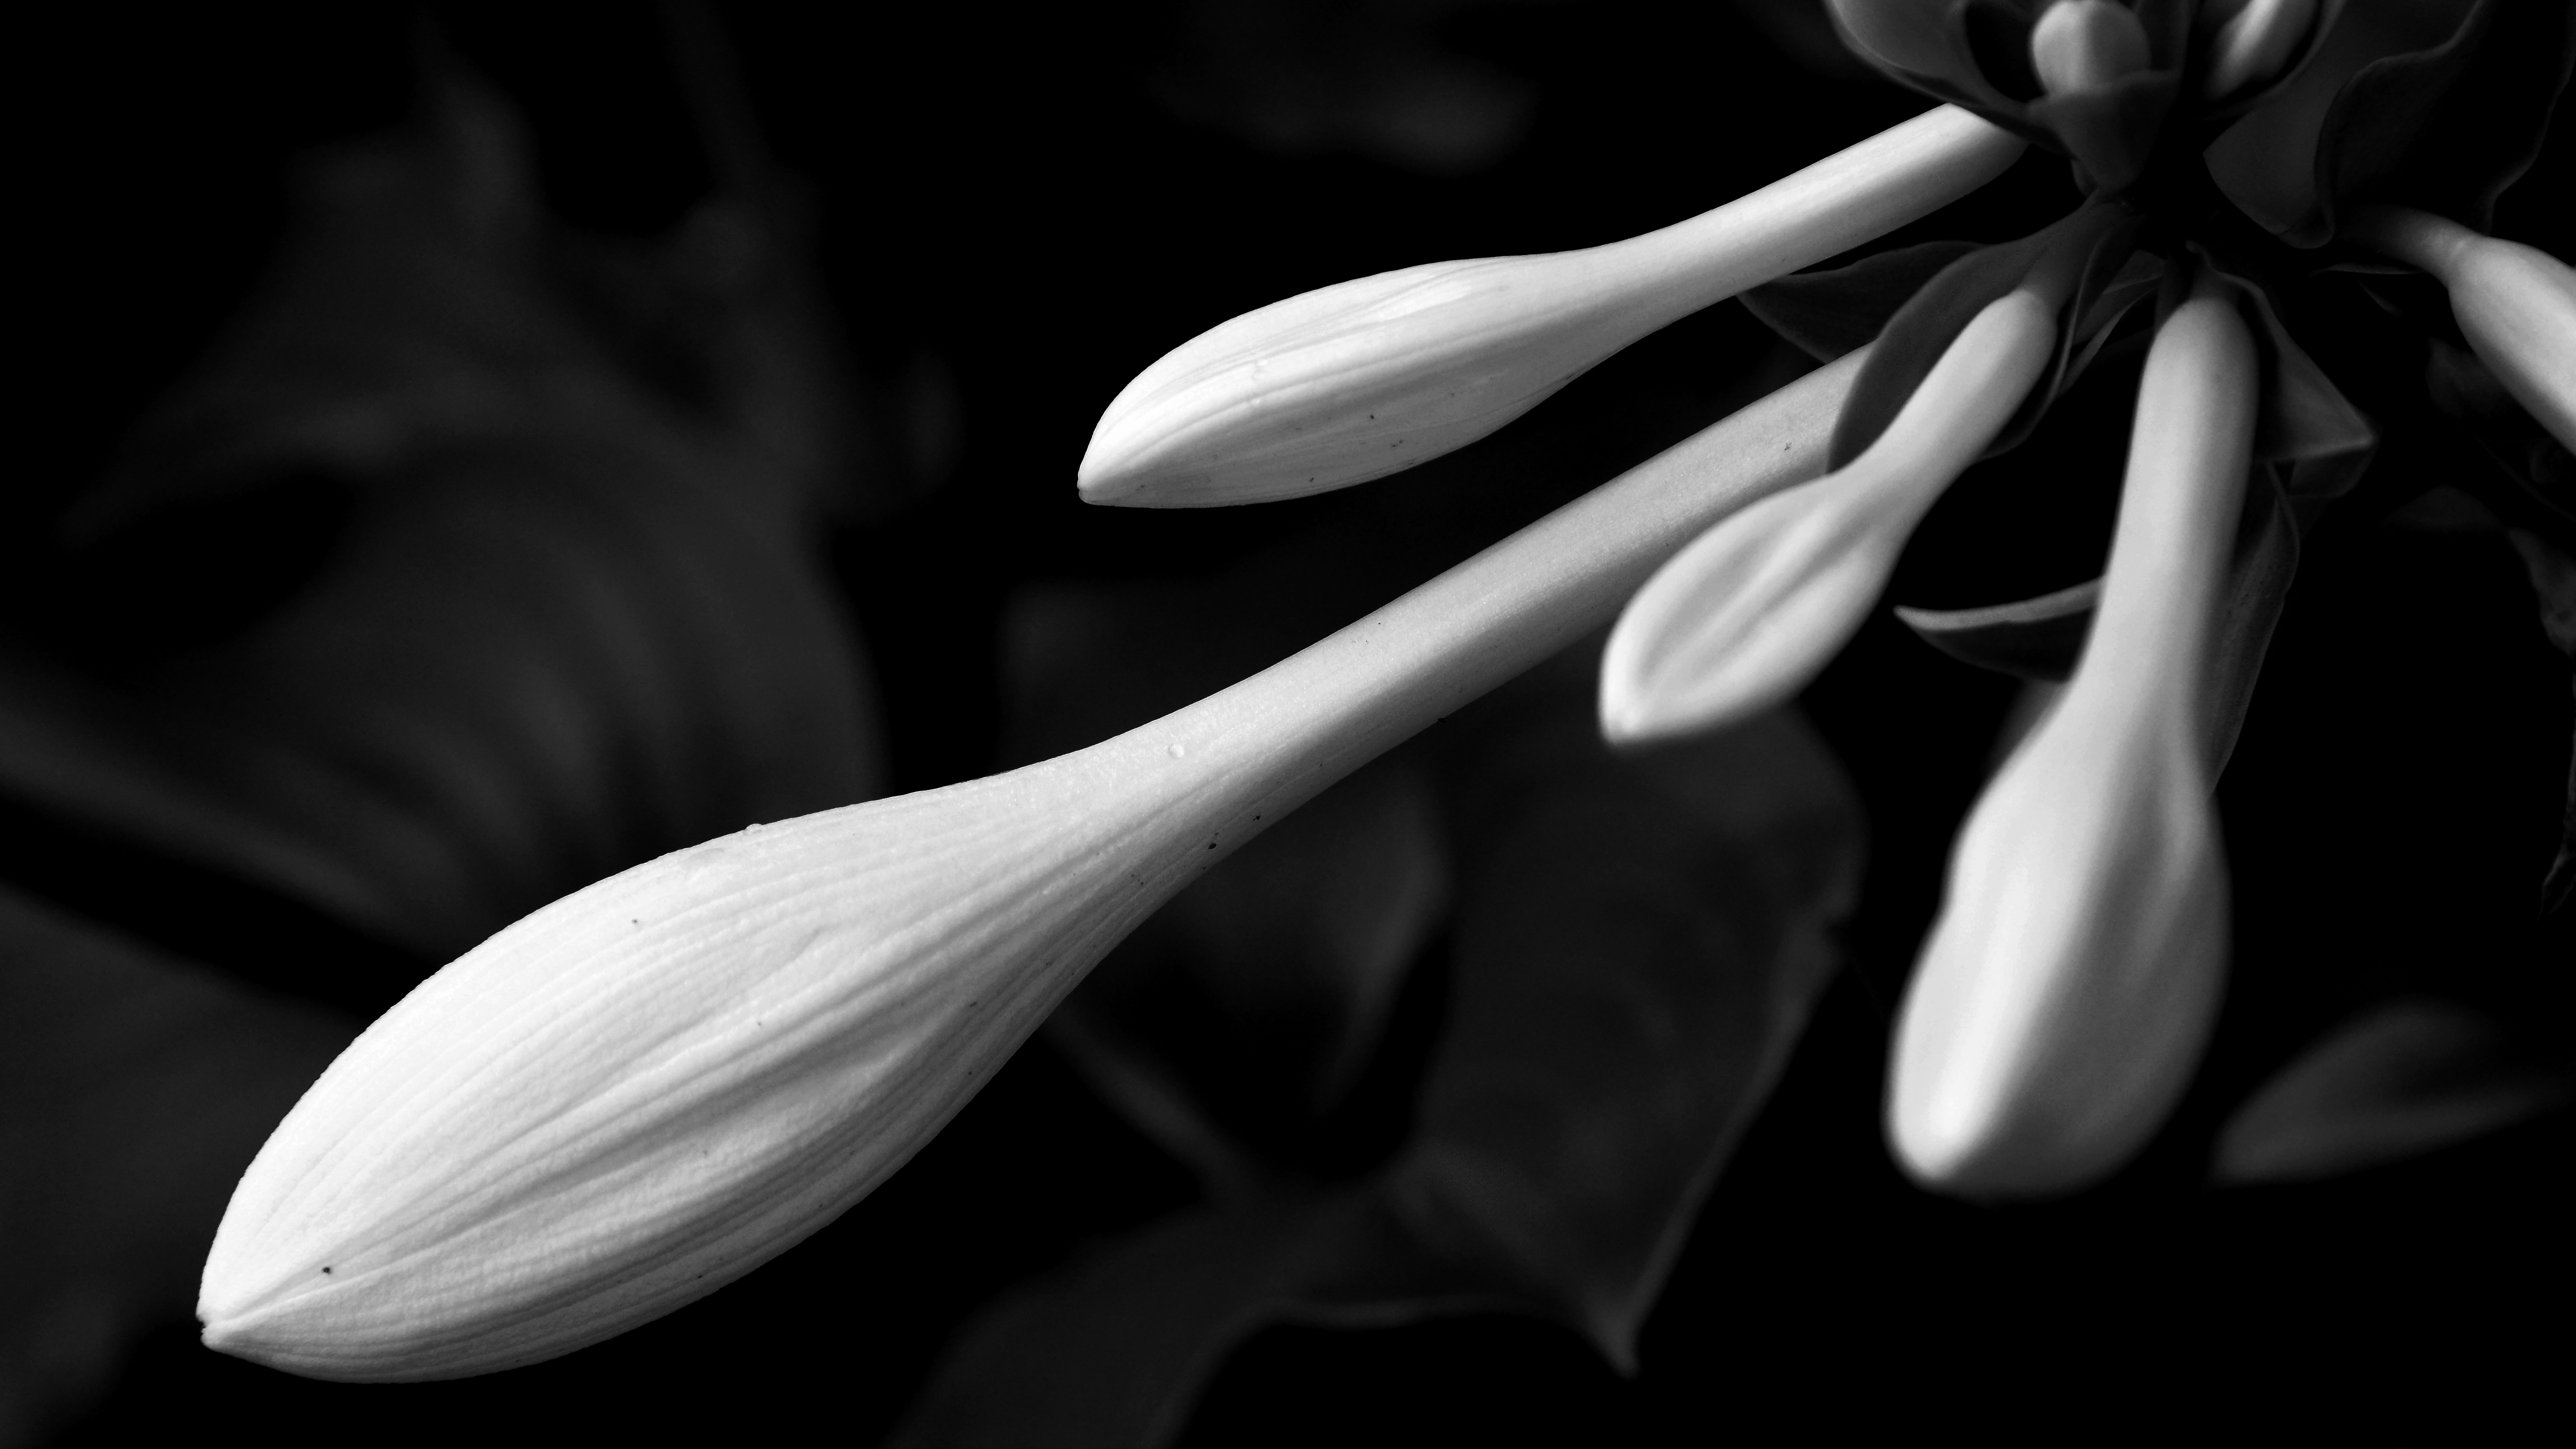 图片素材 : 黑与白, 厂, 白色, 花瓣, 花的, 爱, 浪漫, 黑暗, 黑色, 特写, 宏观摄影, 开花植物, 玫瑰家庭, 静物摄影 ...